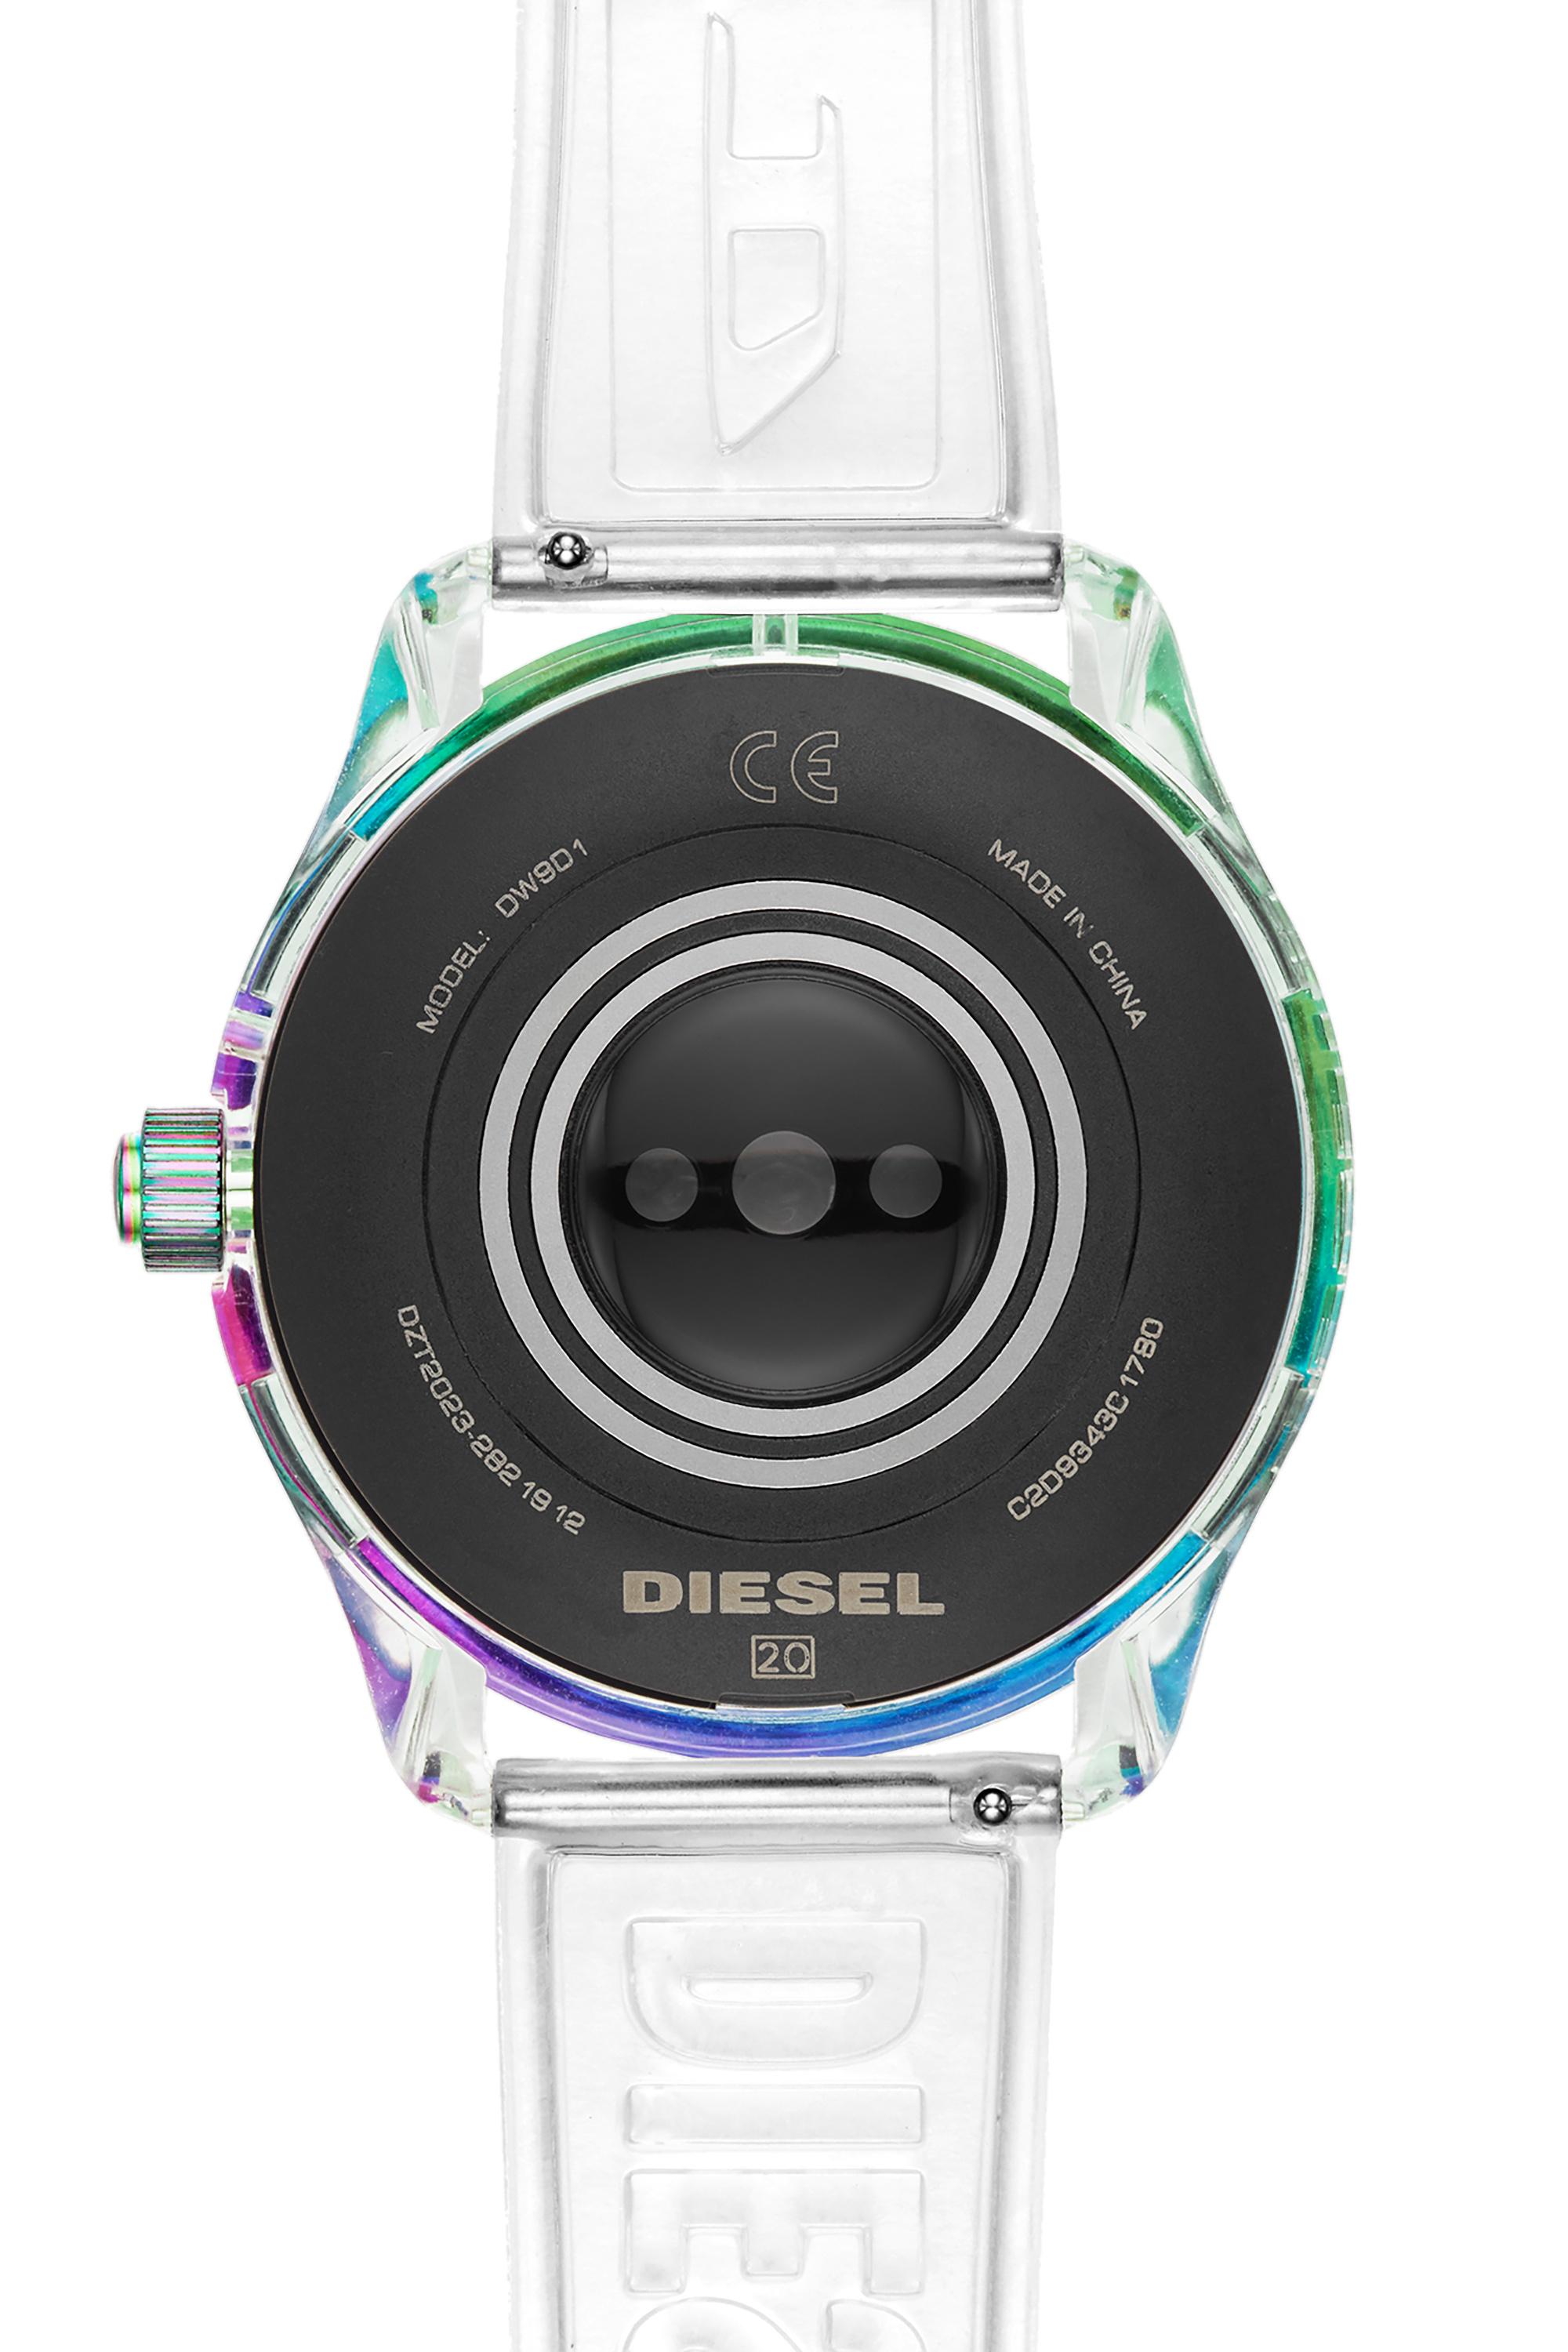 Diesel - DT2023, Weiß - Image 3